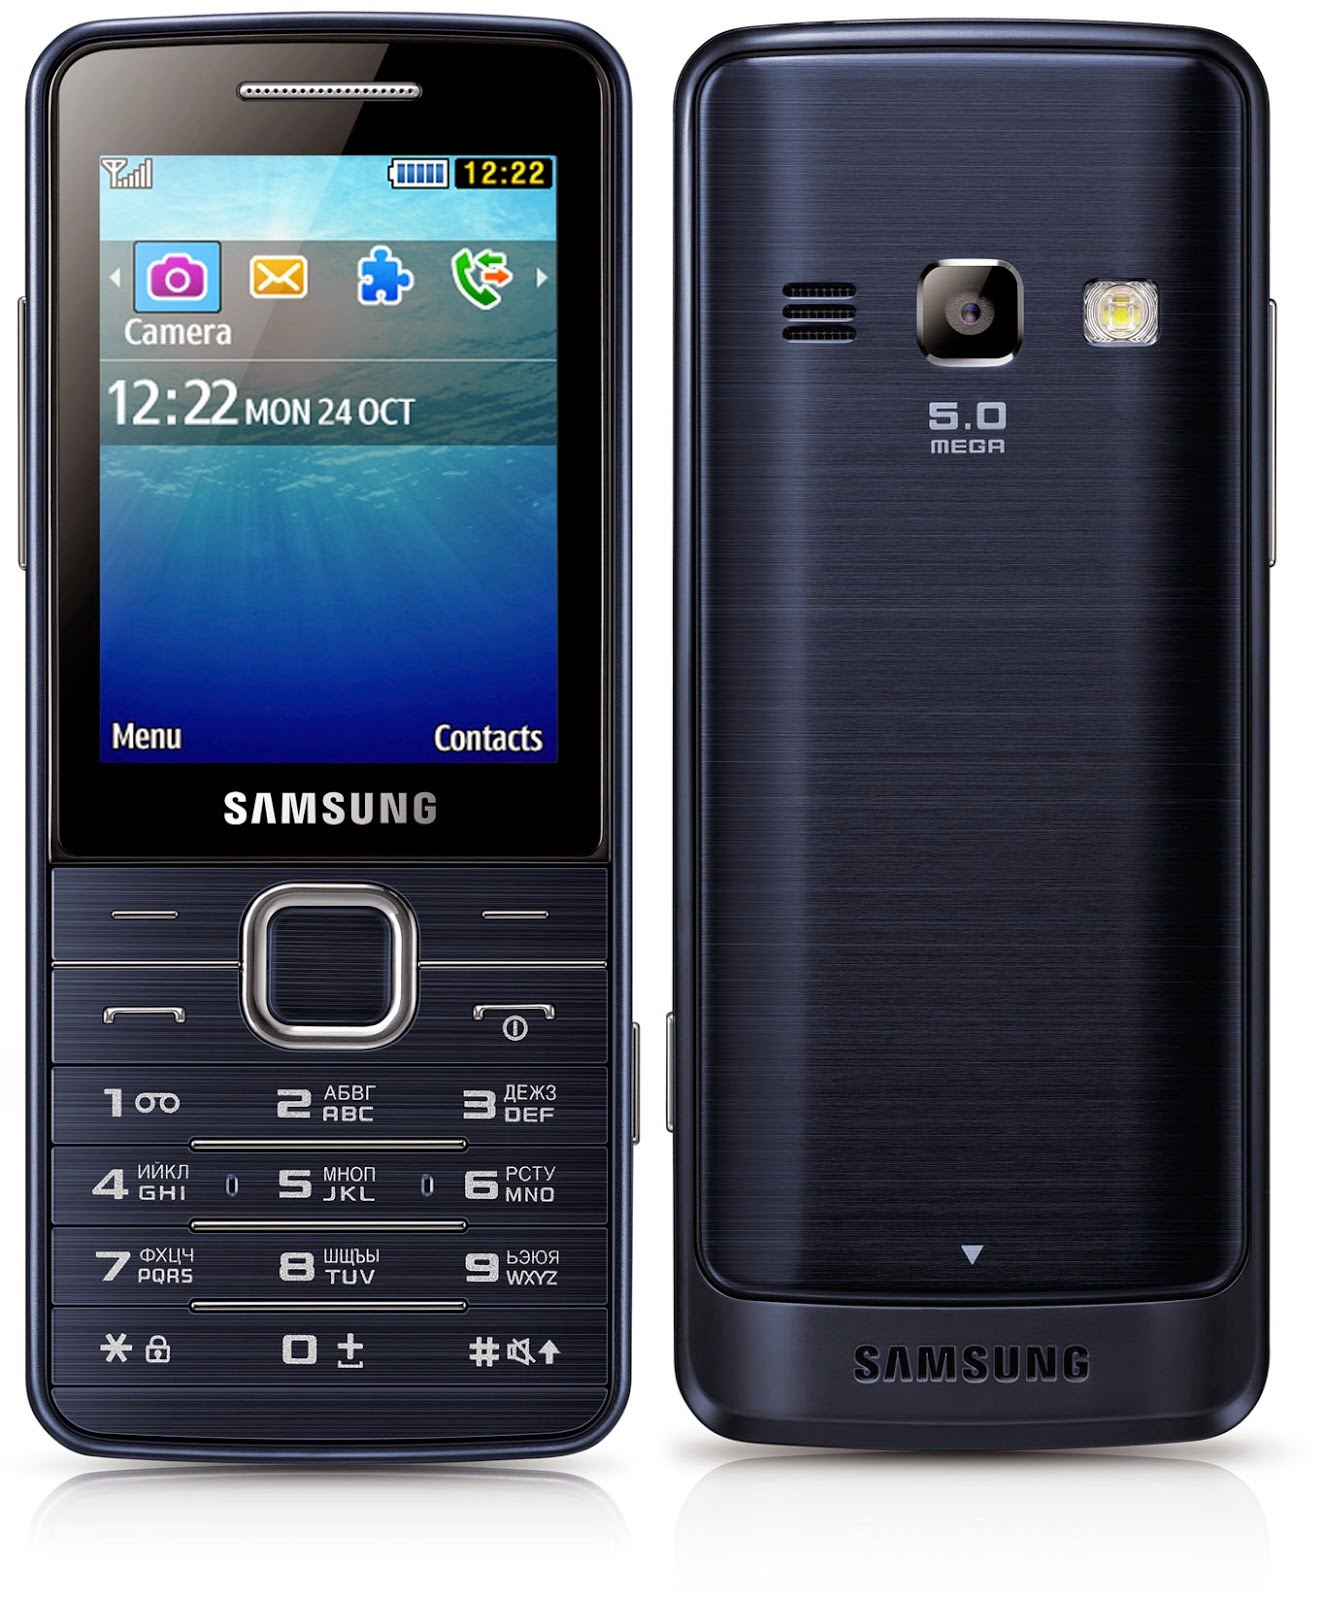 Внешний вид телефона GT-S5611